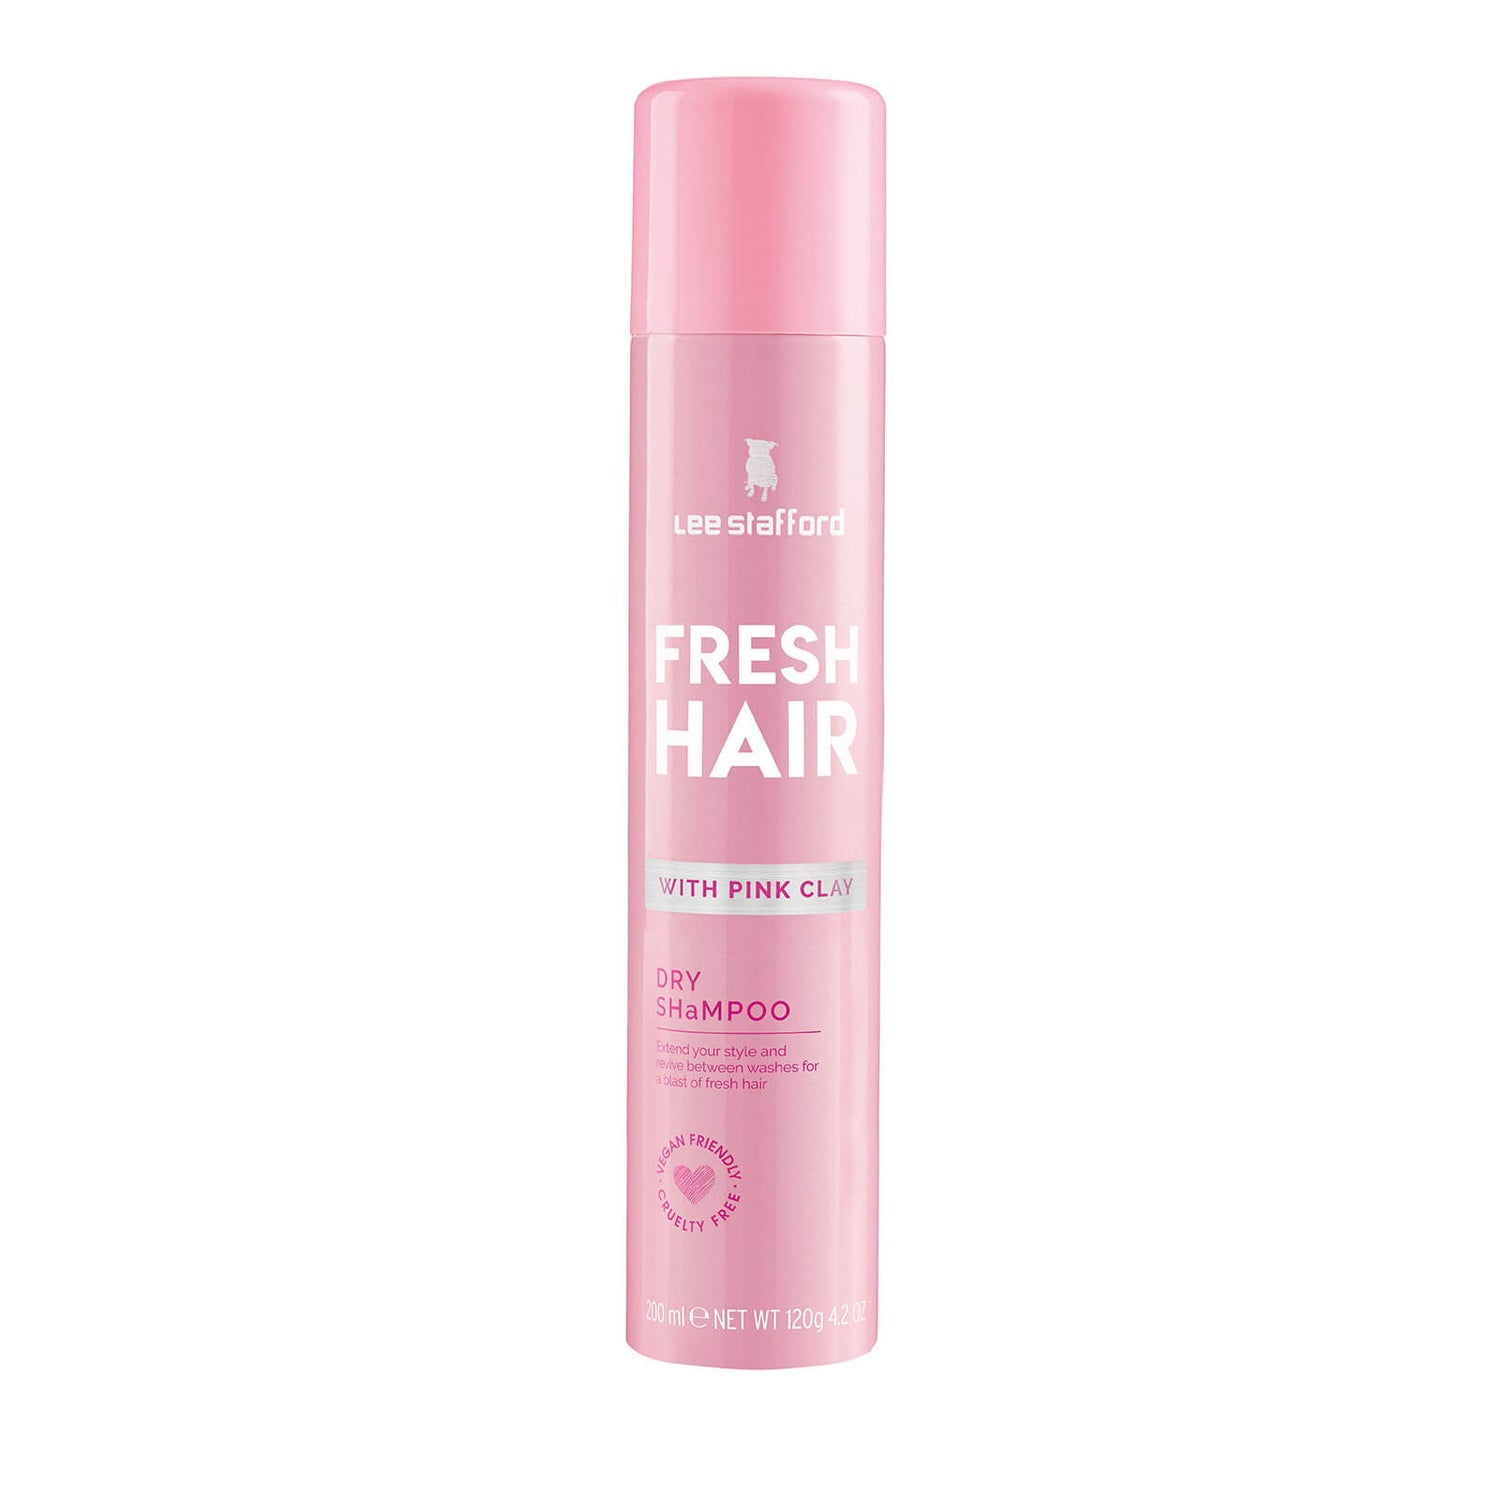 Lee Stafford Fresh Hair Dry Shampoo oz SkinStore 6.76 